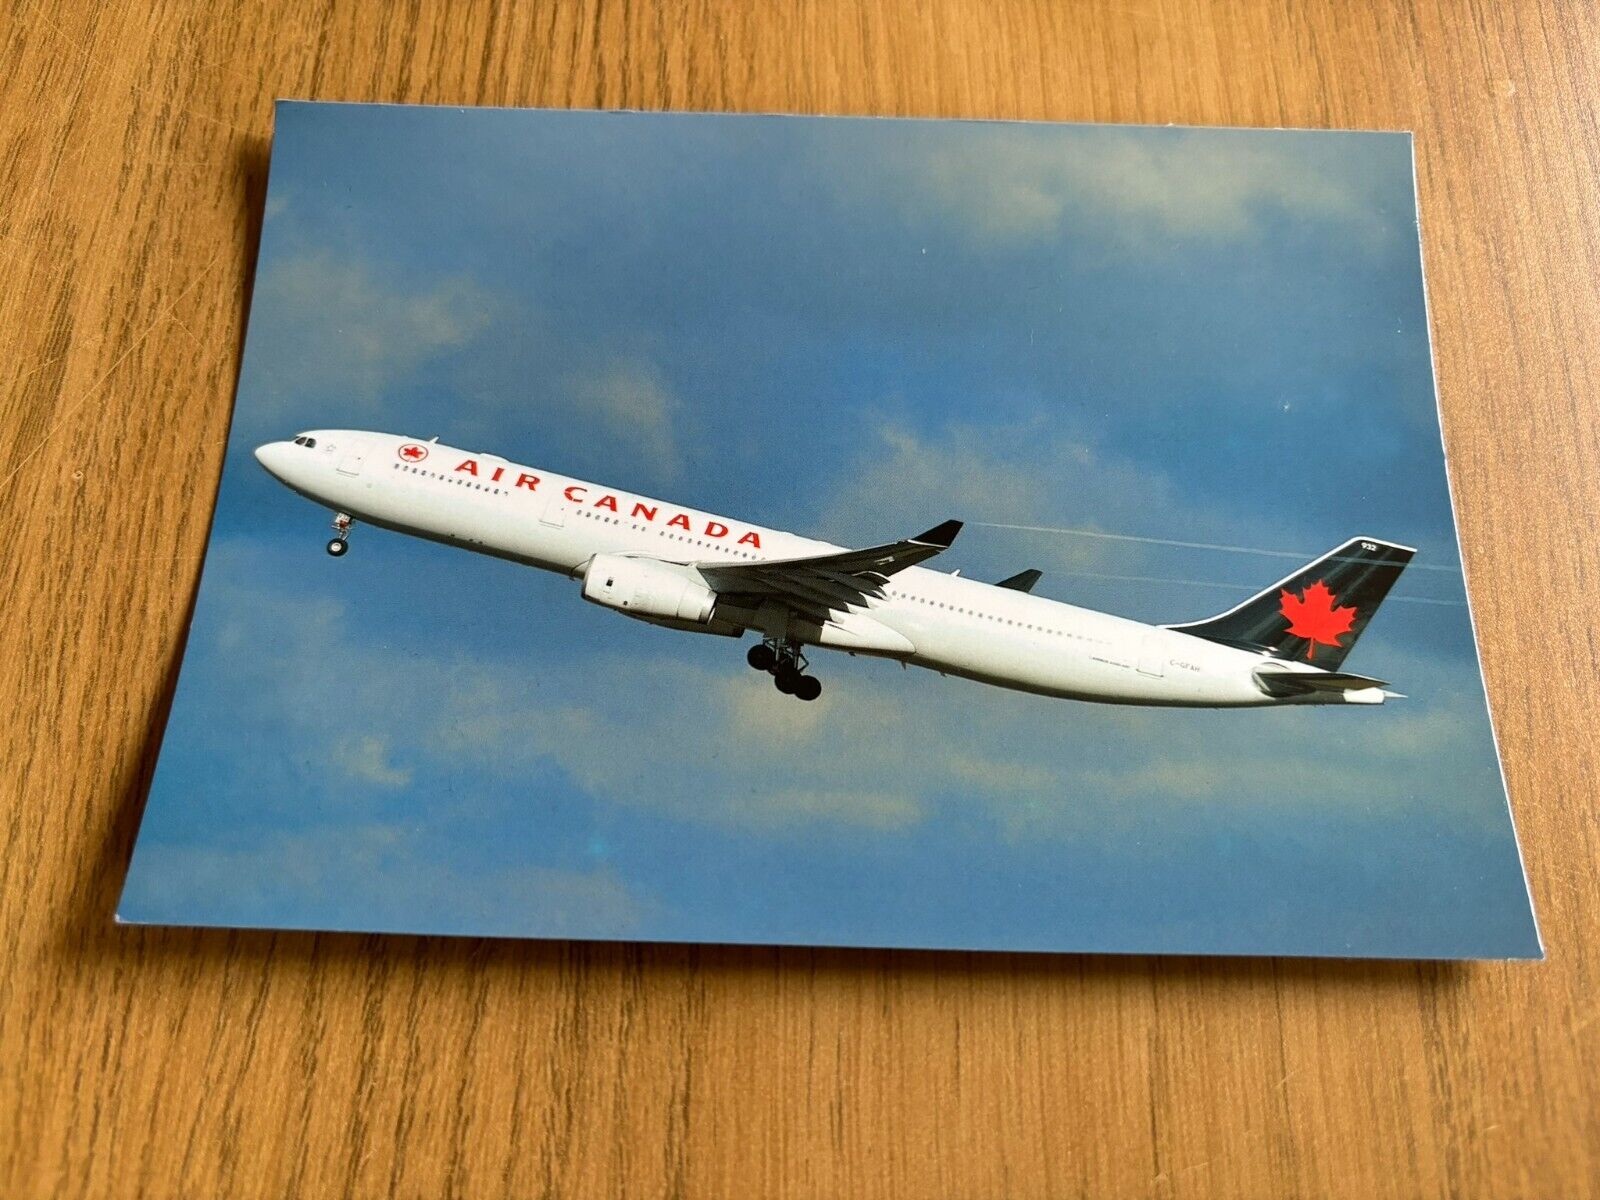 Air Canada Airbus A330-300 aircraft postcard